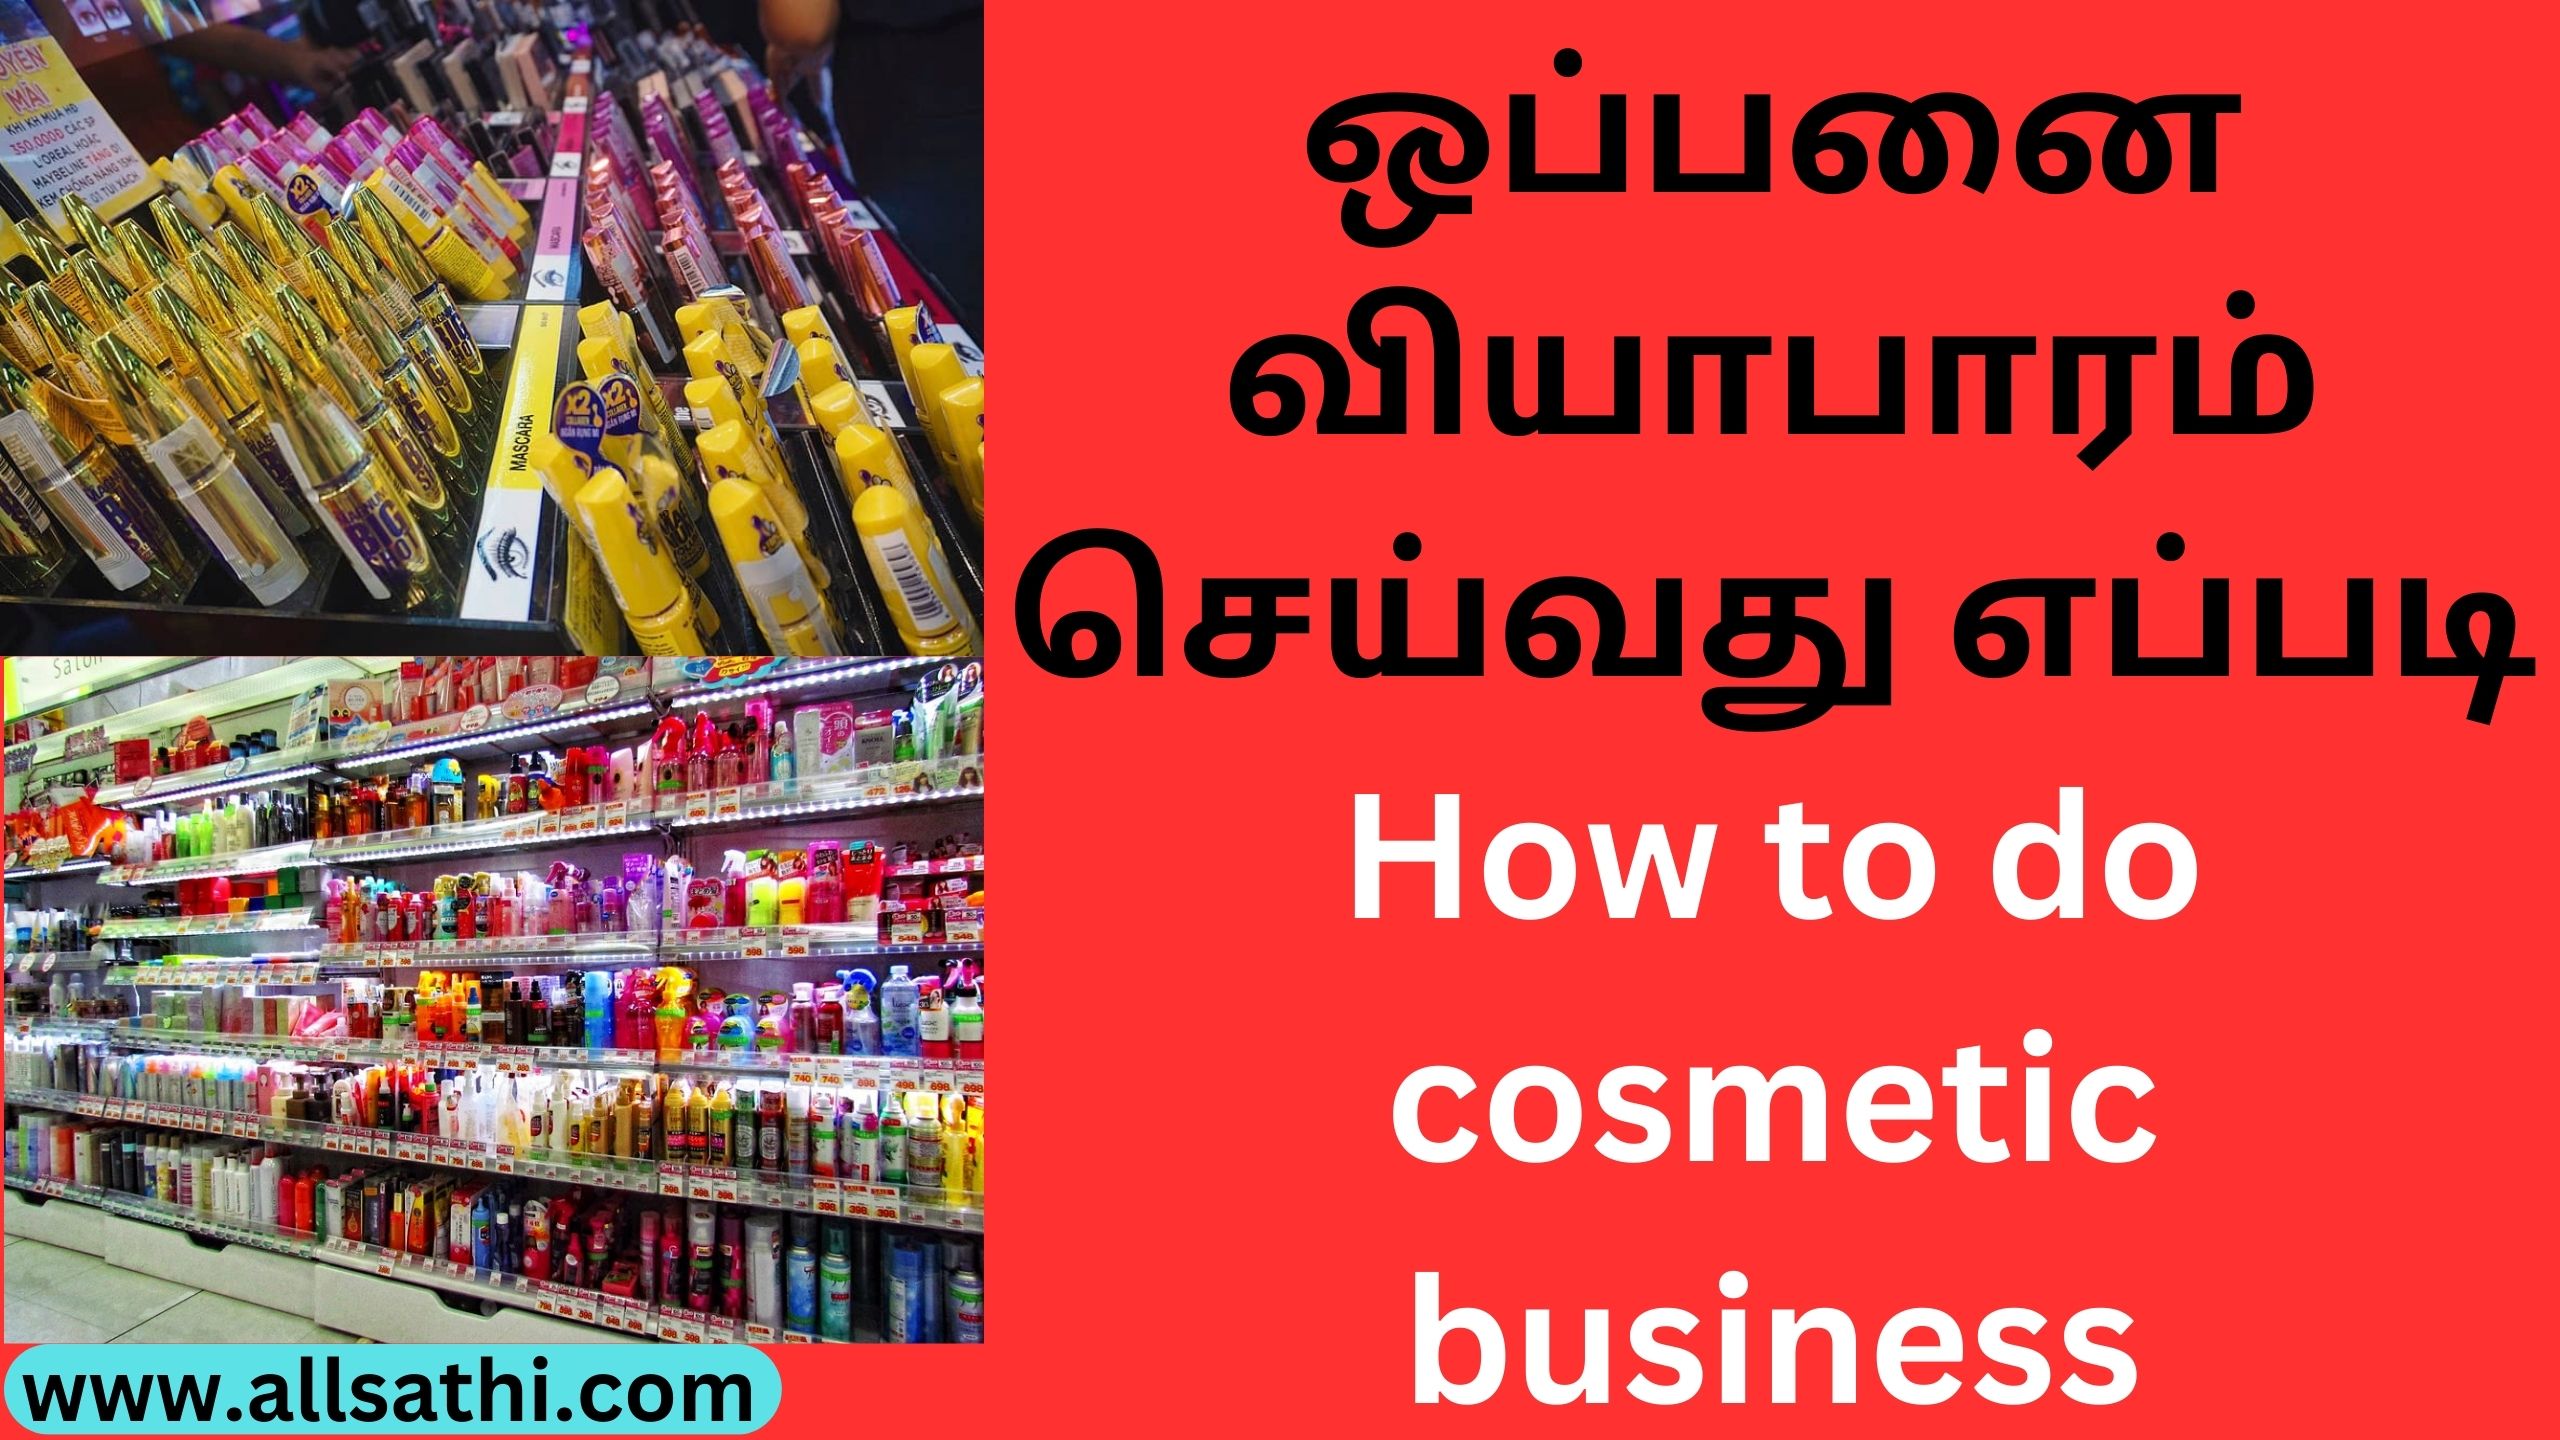 ஒப்பனை வியாபாரம் செய்வது எப்படி | How to do cosmetic business